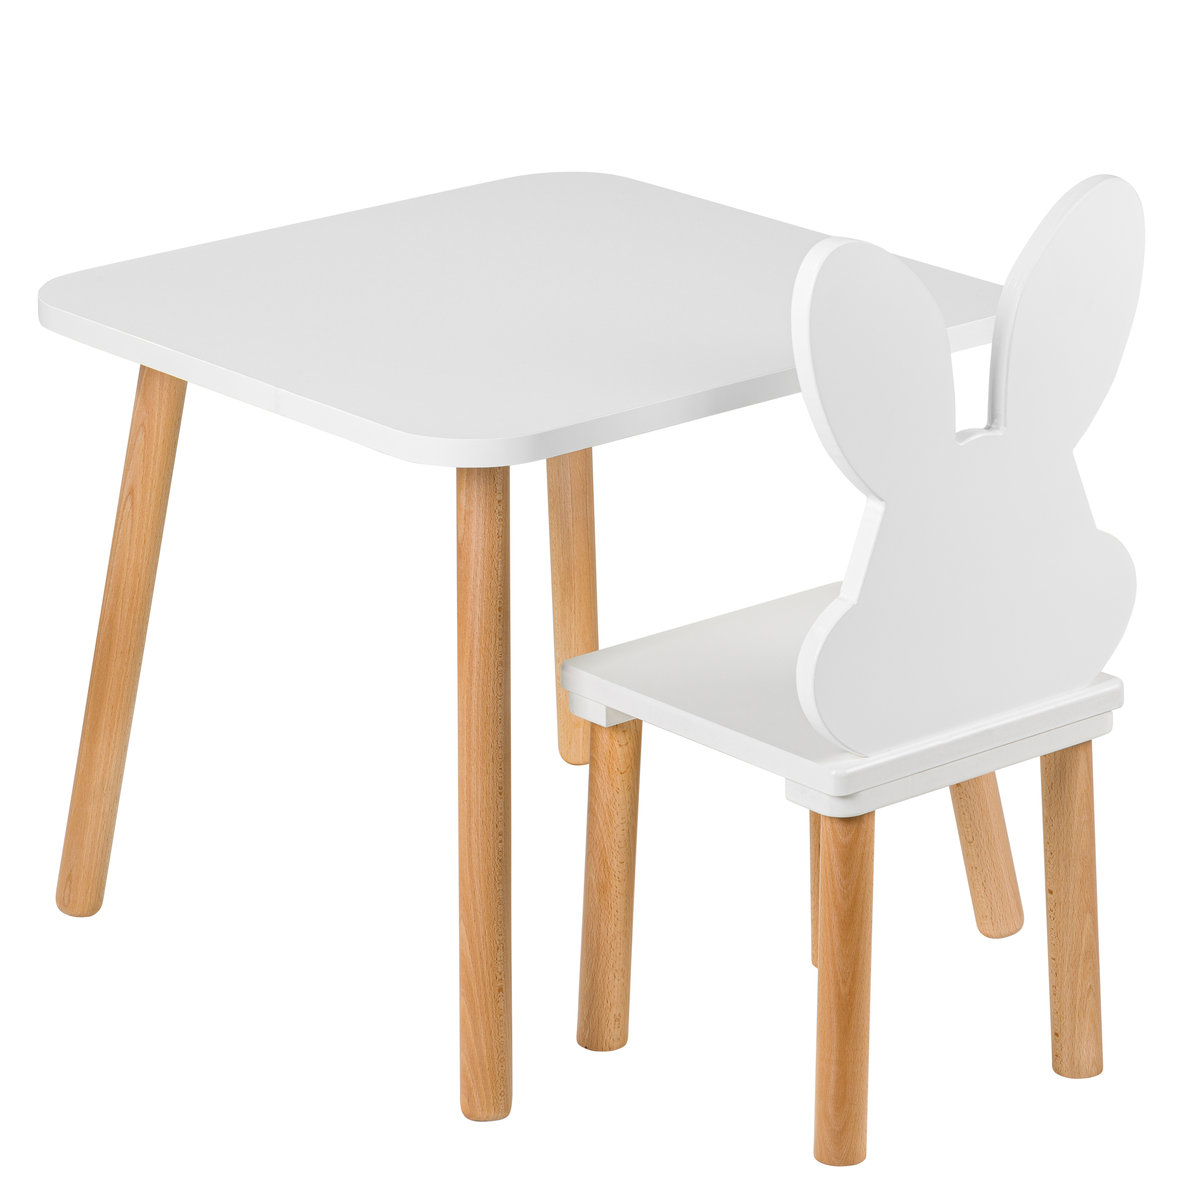 Zestaw mebli dla dzieci ,stolik 50/50 cm z krzesełkiem królik